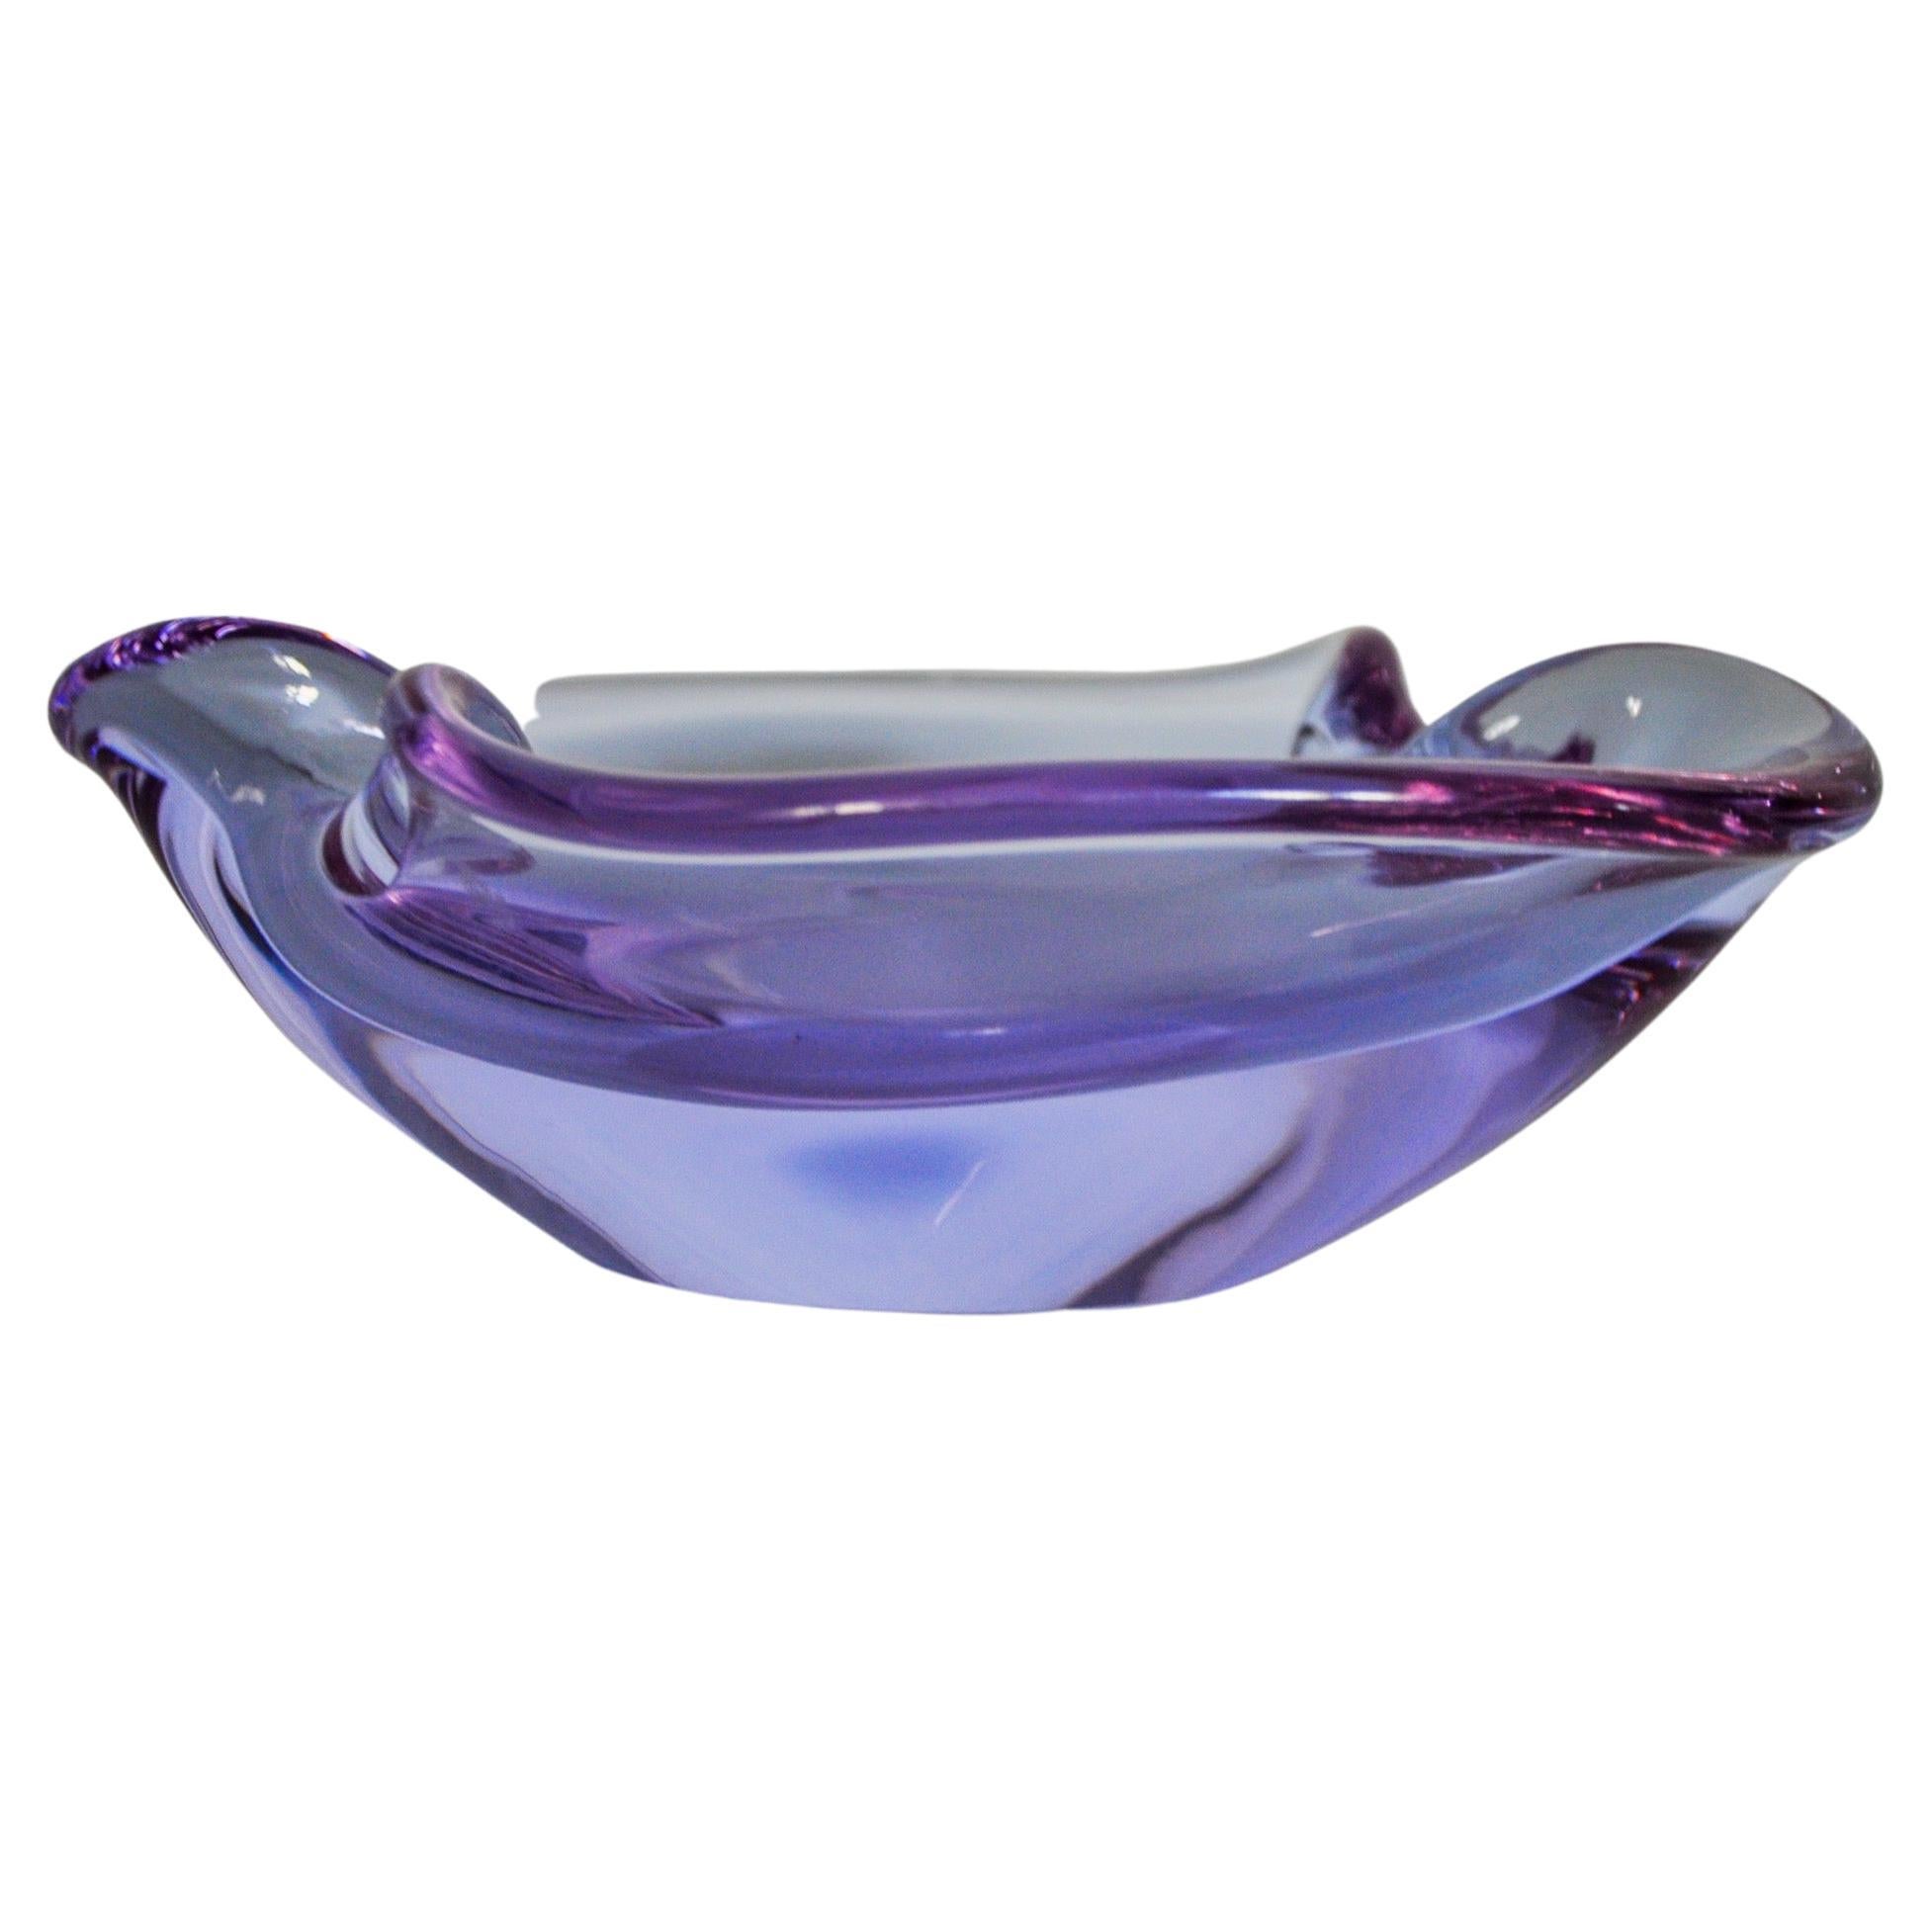 Purple ashtray by seguso, murano glass, italy, 1970